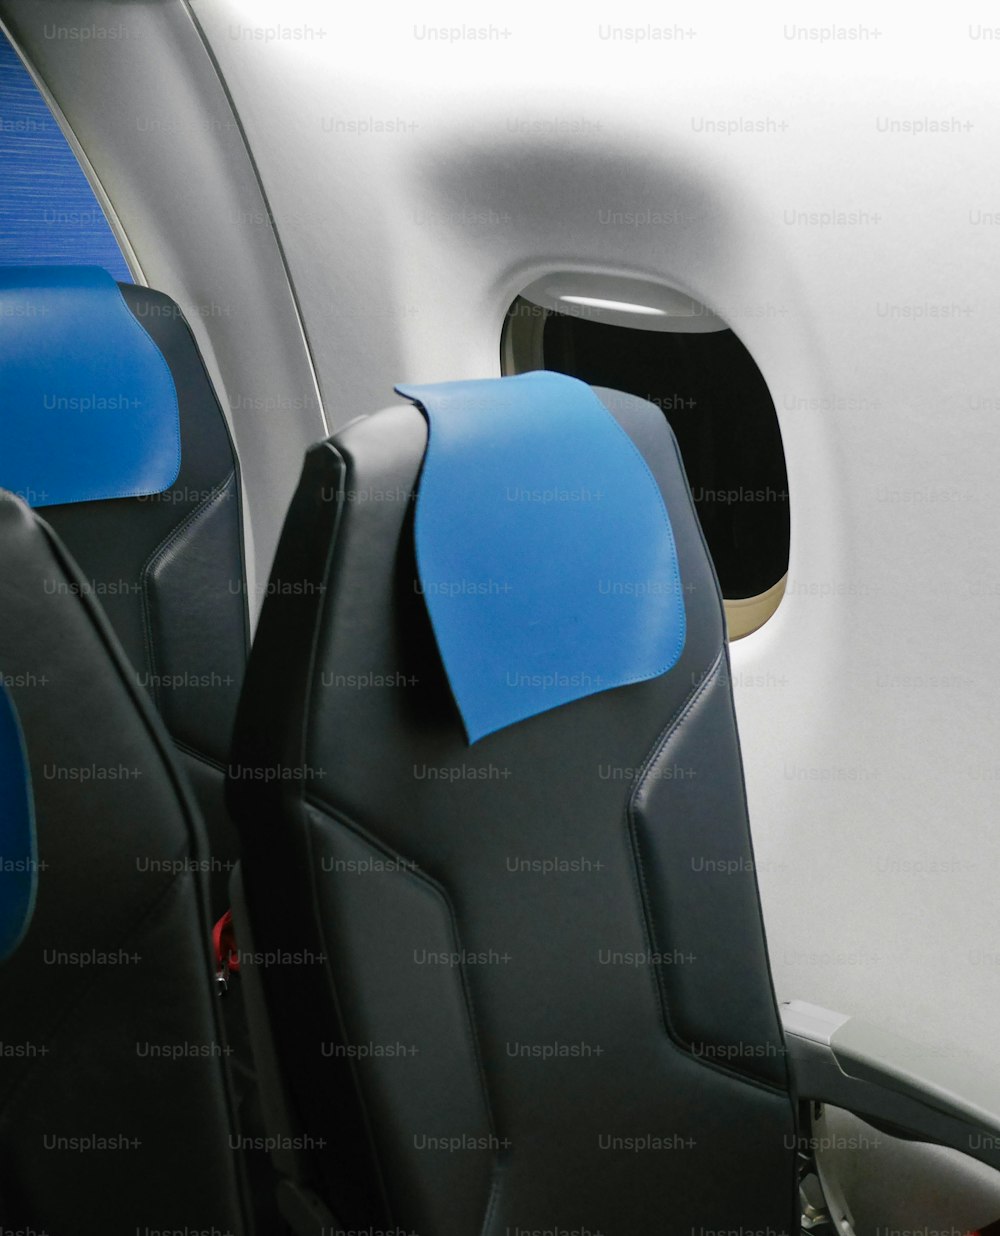 飛行機の座席は青と黒です